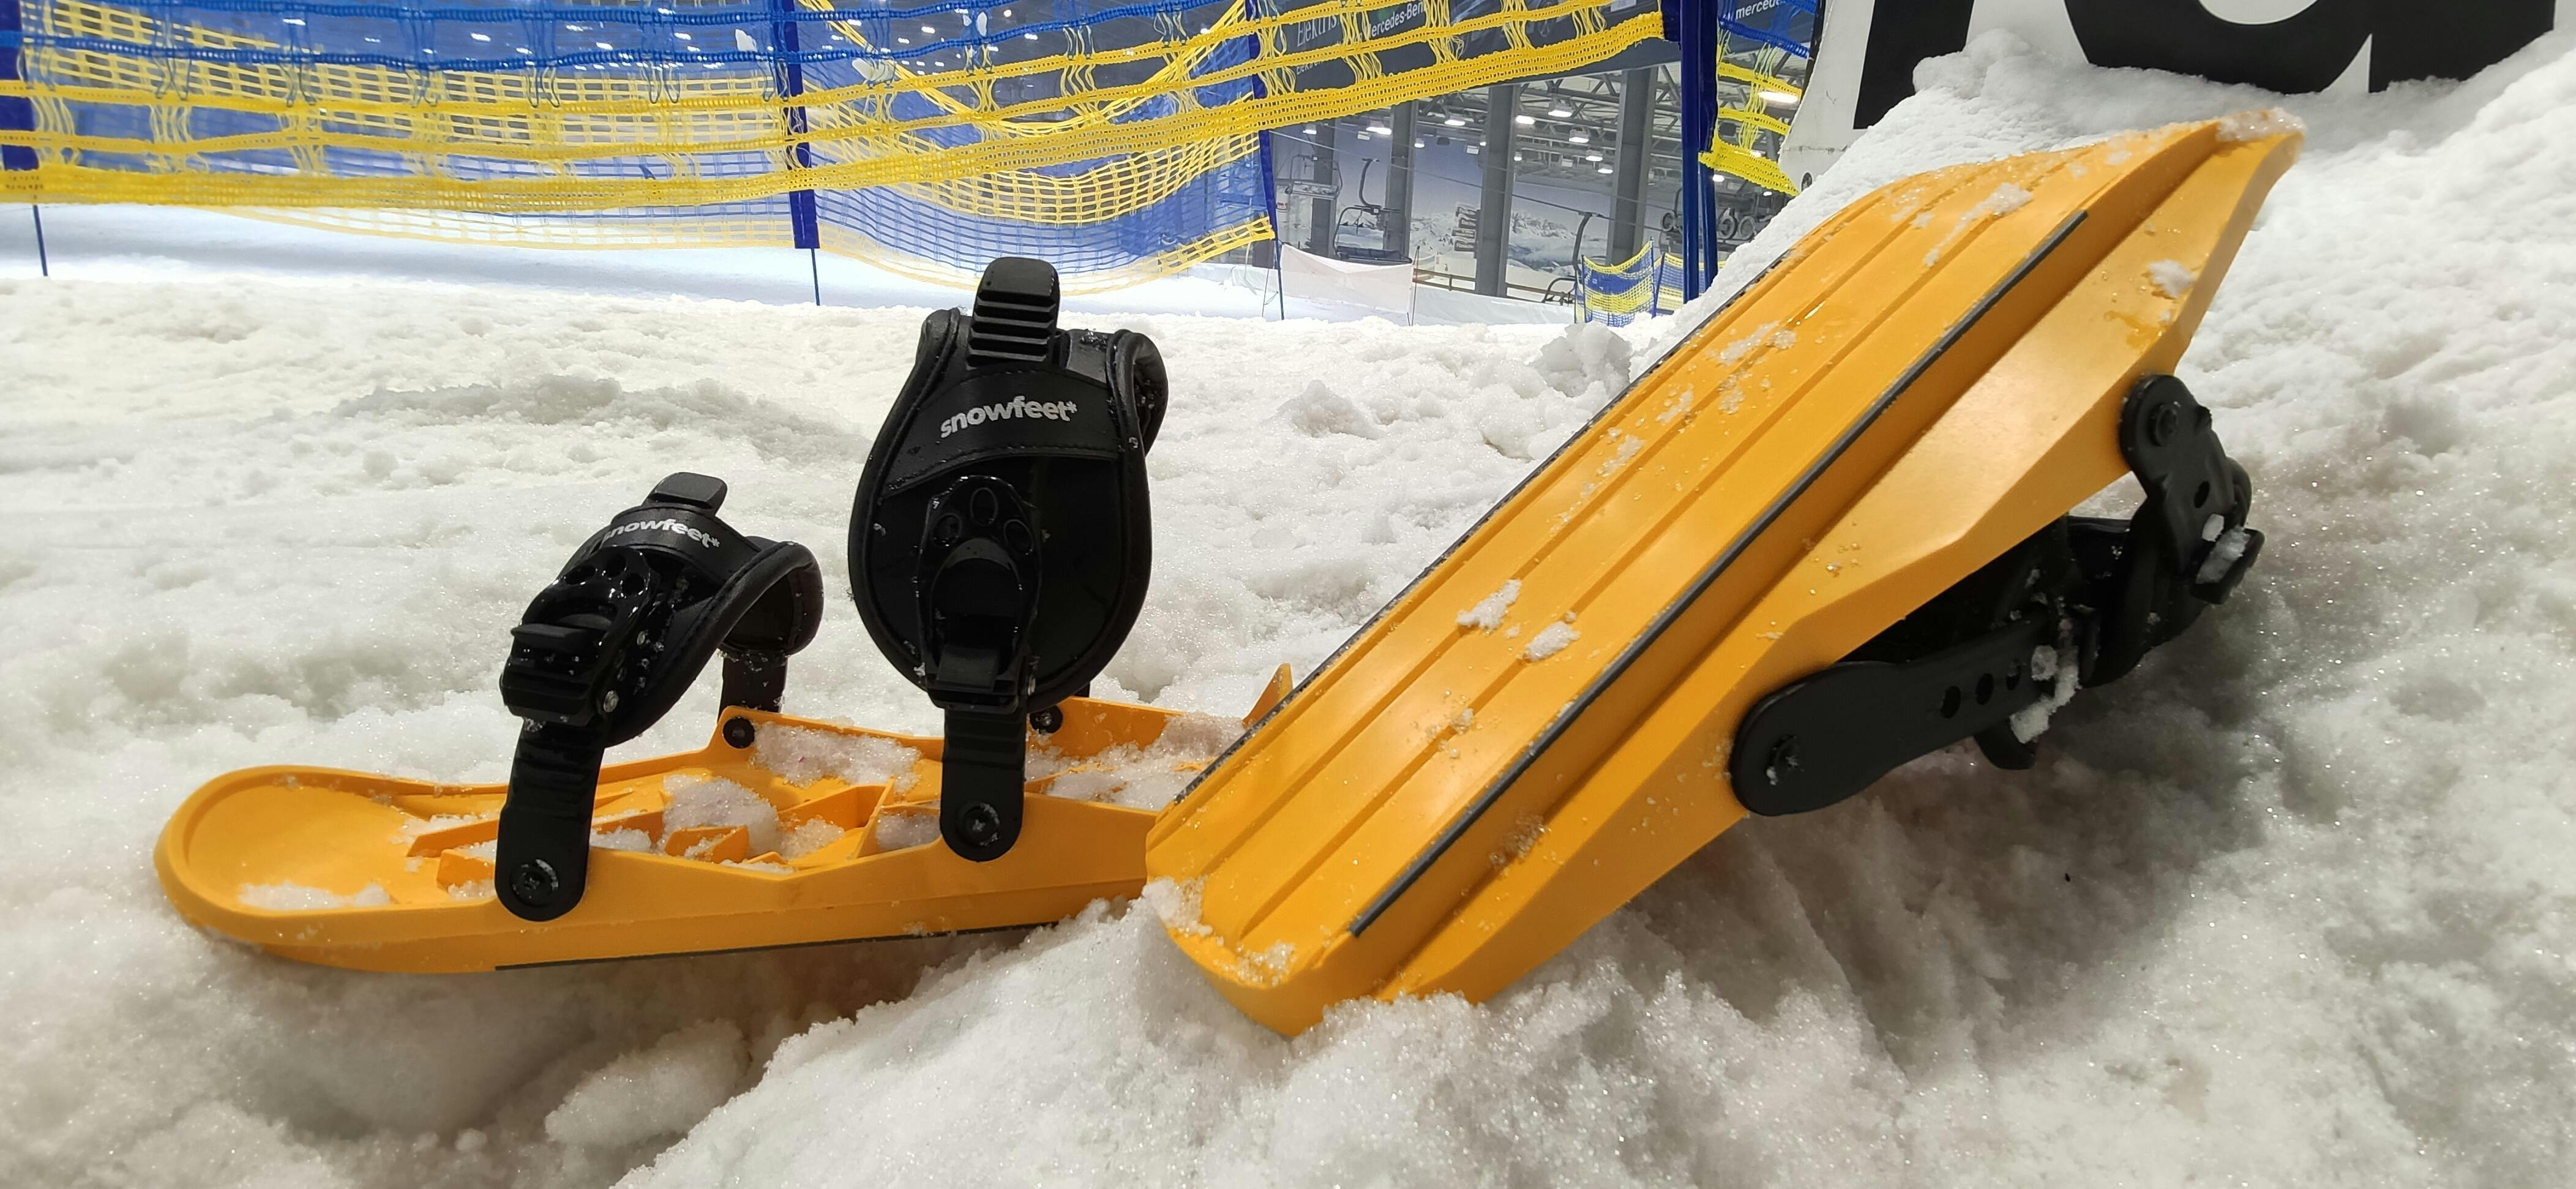 Snowfeet X - Mini Ski Skates - Pro Model | Official Snowfeet® Store